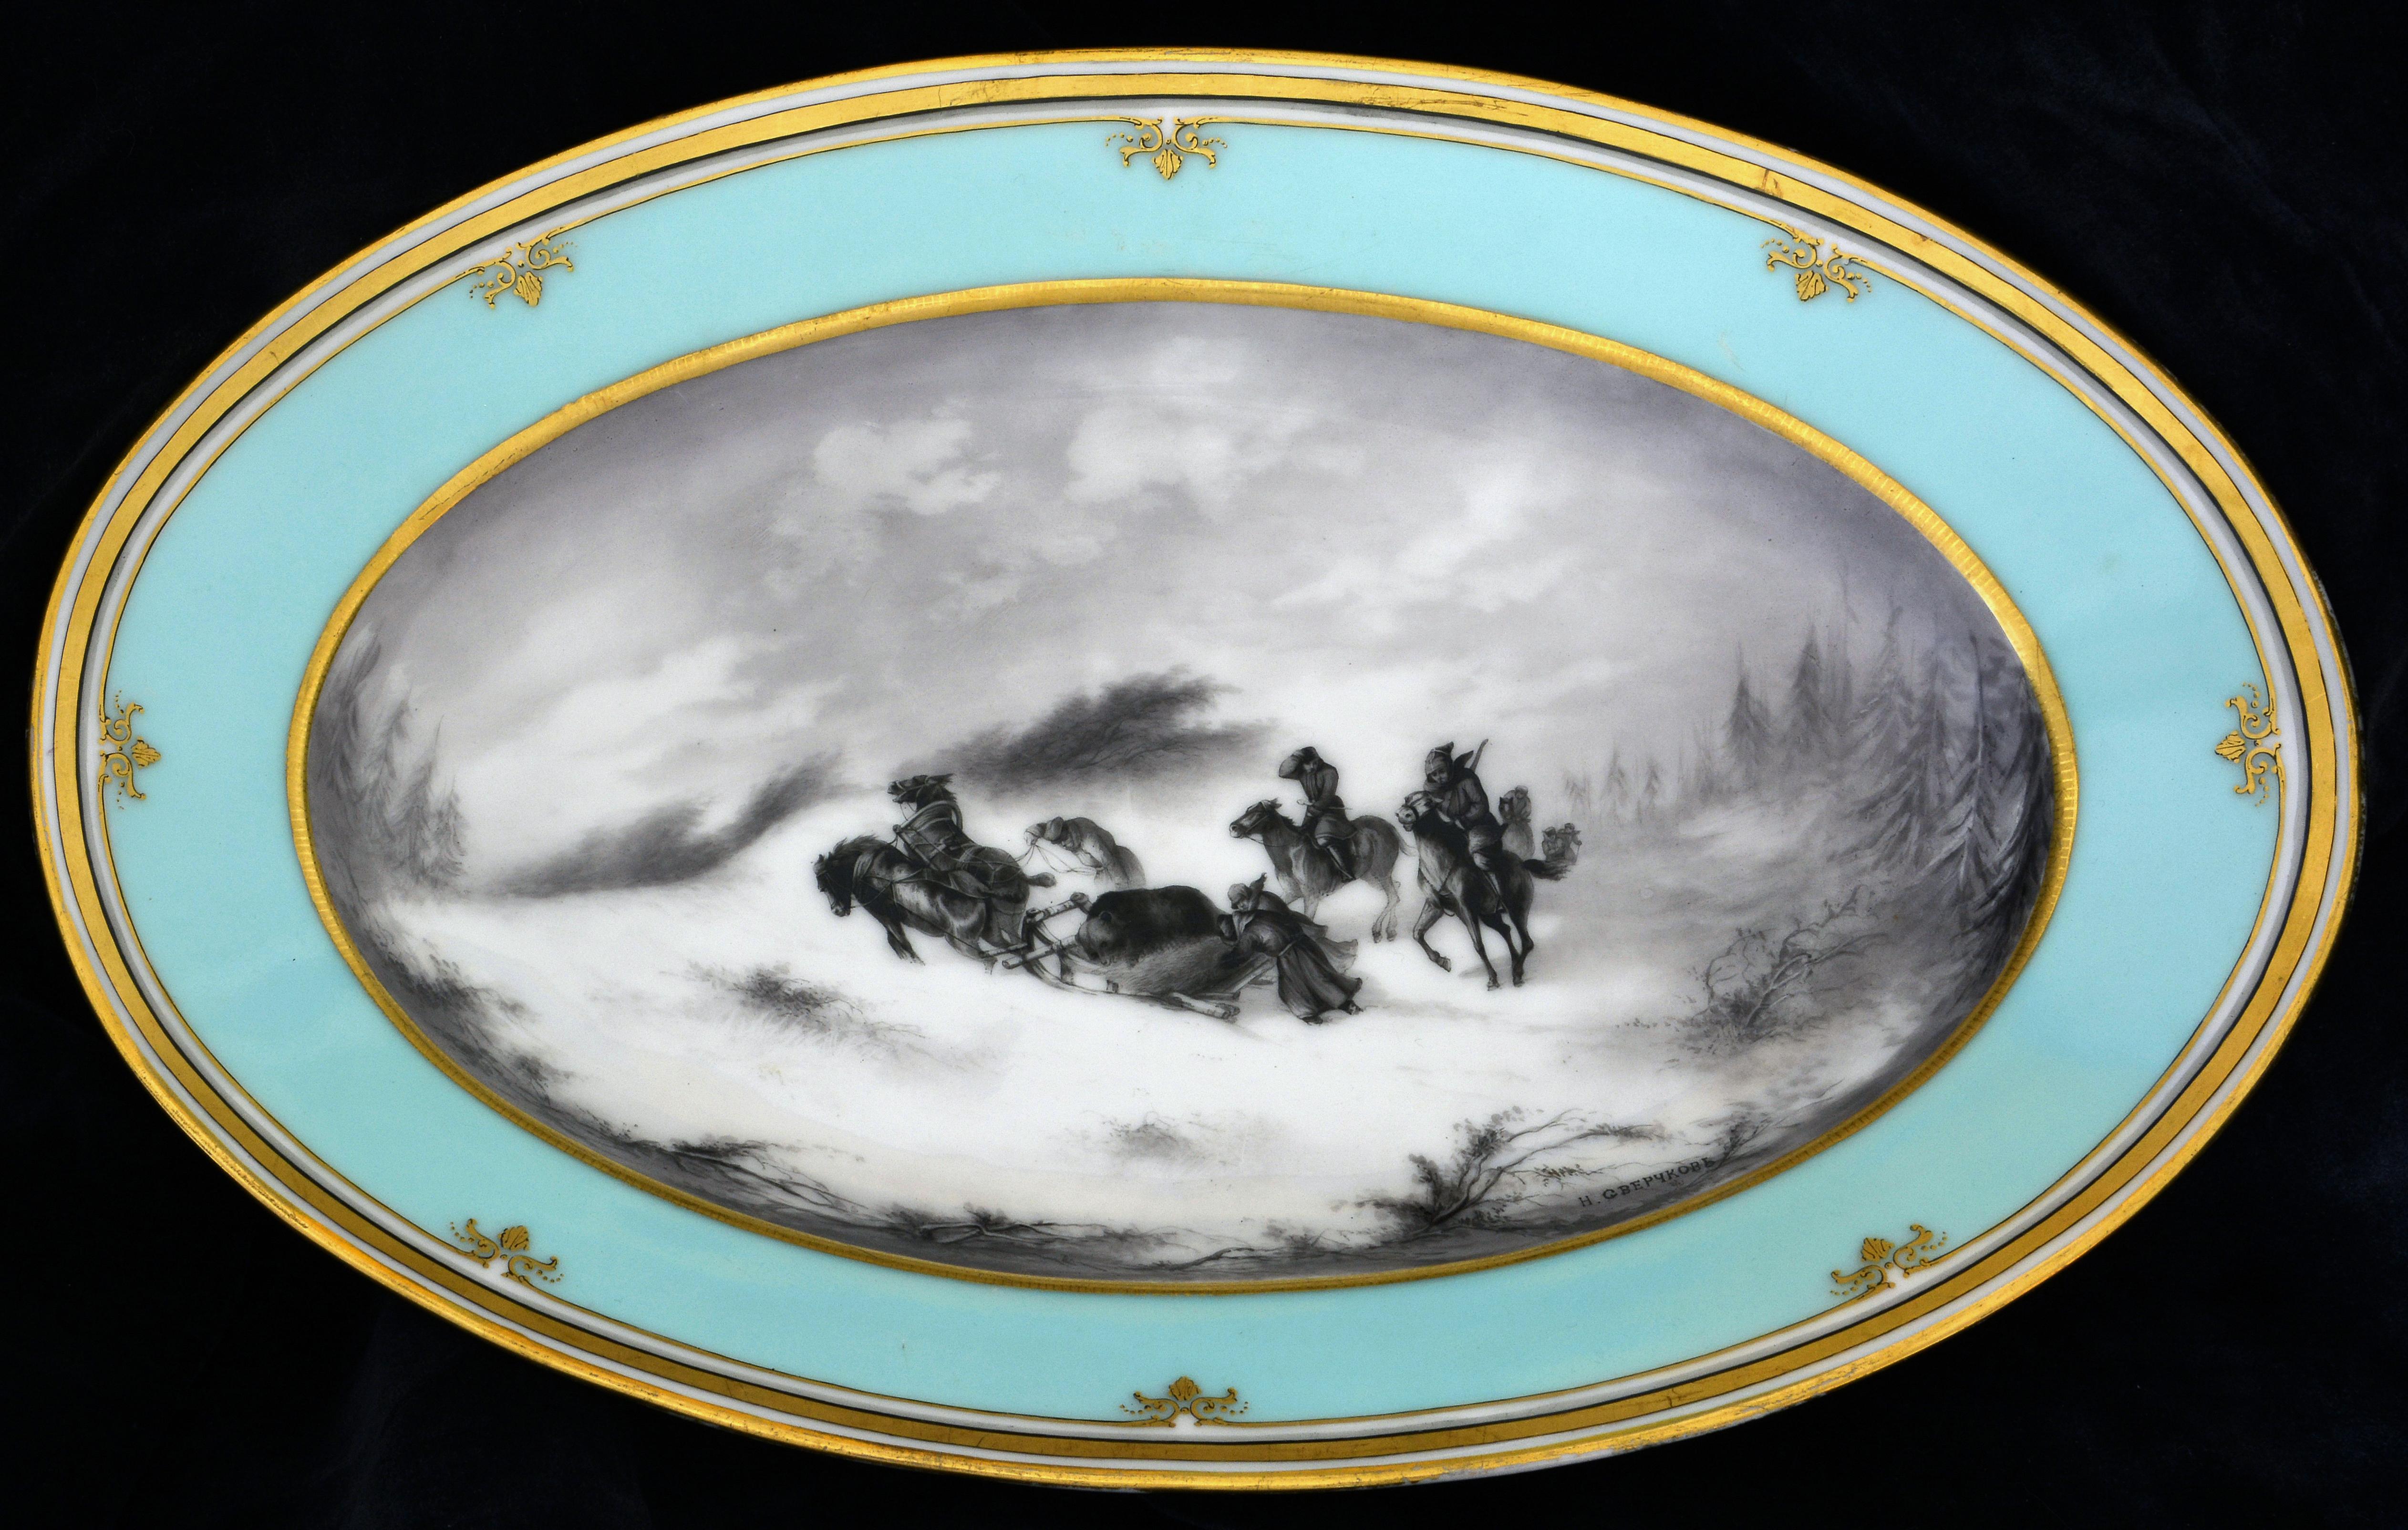 Assiette ovale. Retour d'une chasse à l'ours. 19ème siècle. Porcelaine, 4,5x39,5x26 cm